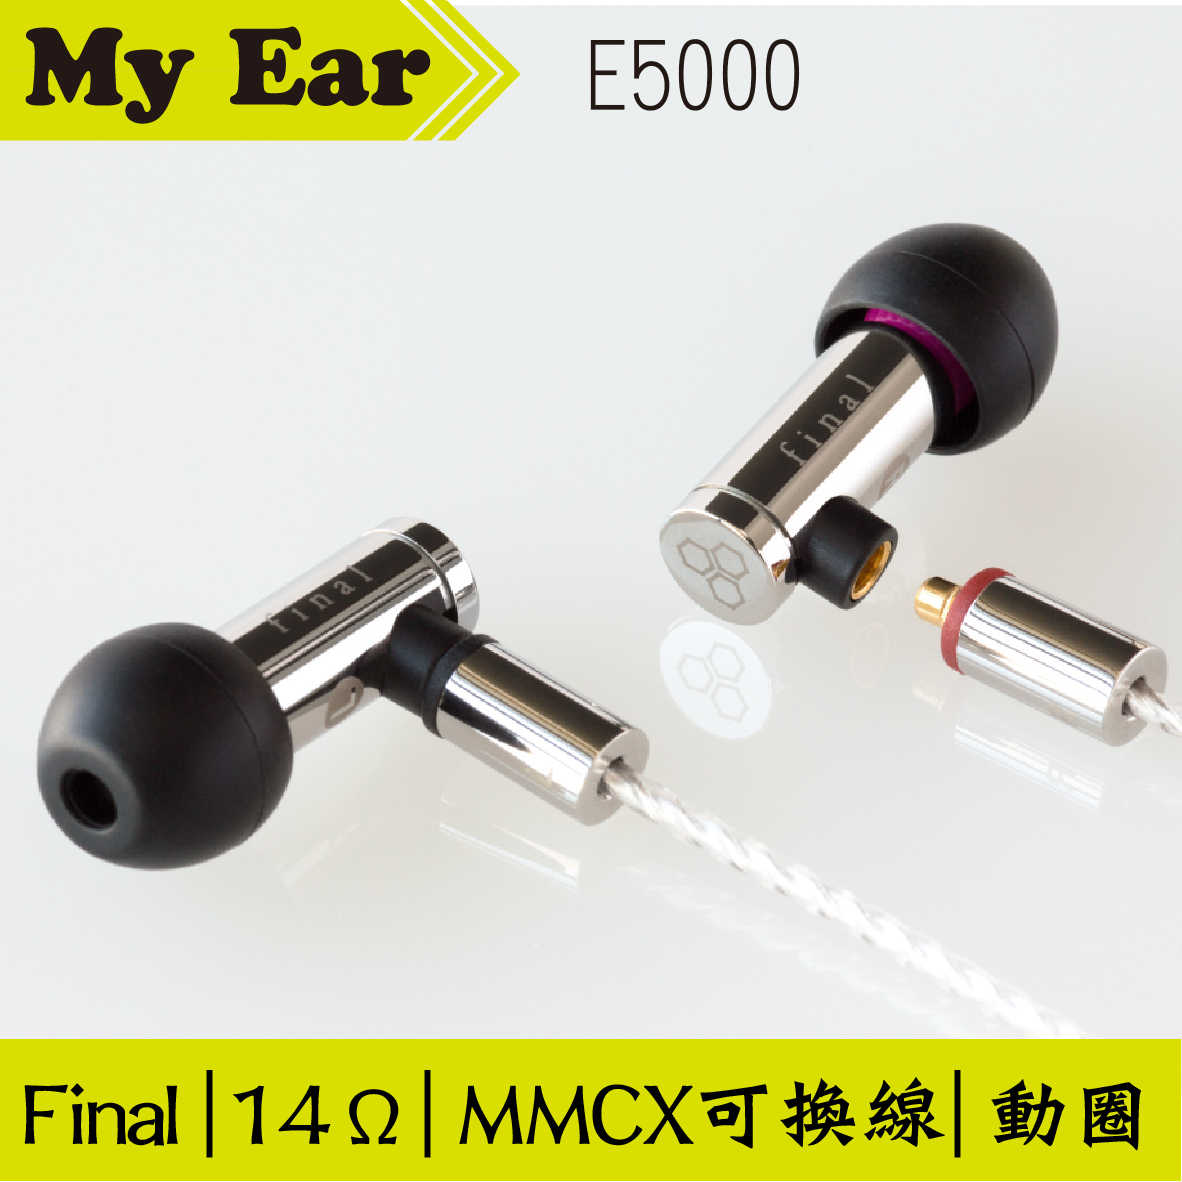 Final E5000 入耳式 耳機 可換線 MMCX 京線 金屬工藝 | My Ear 耳機專門店